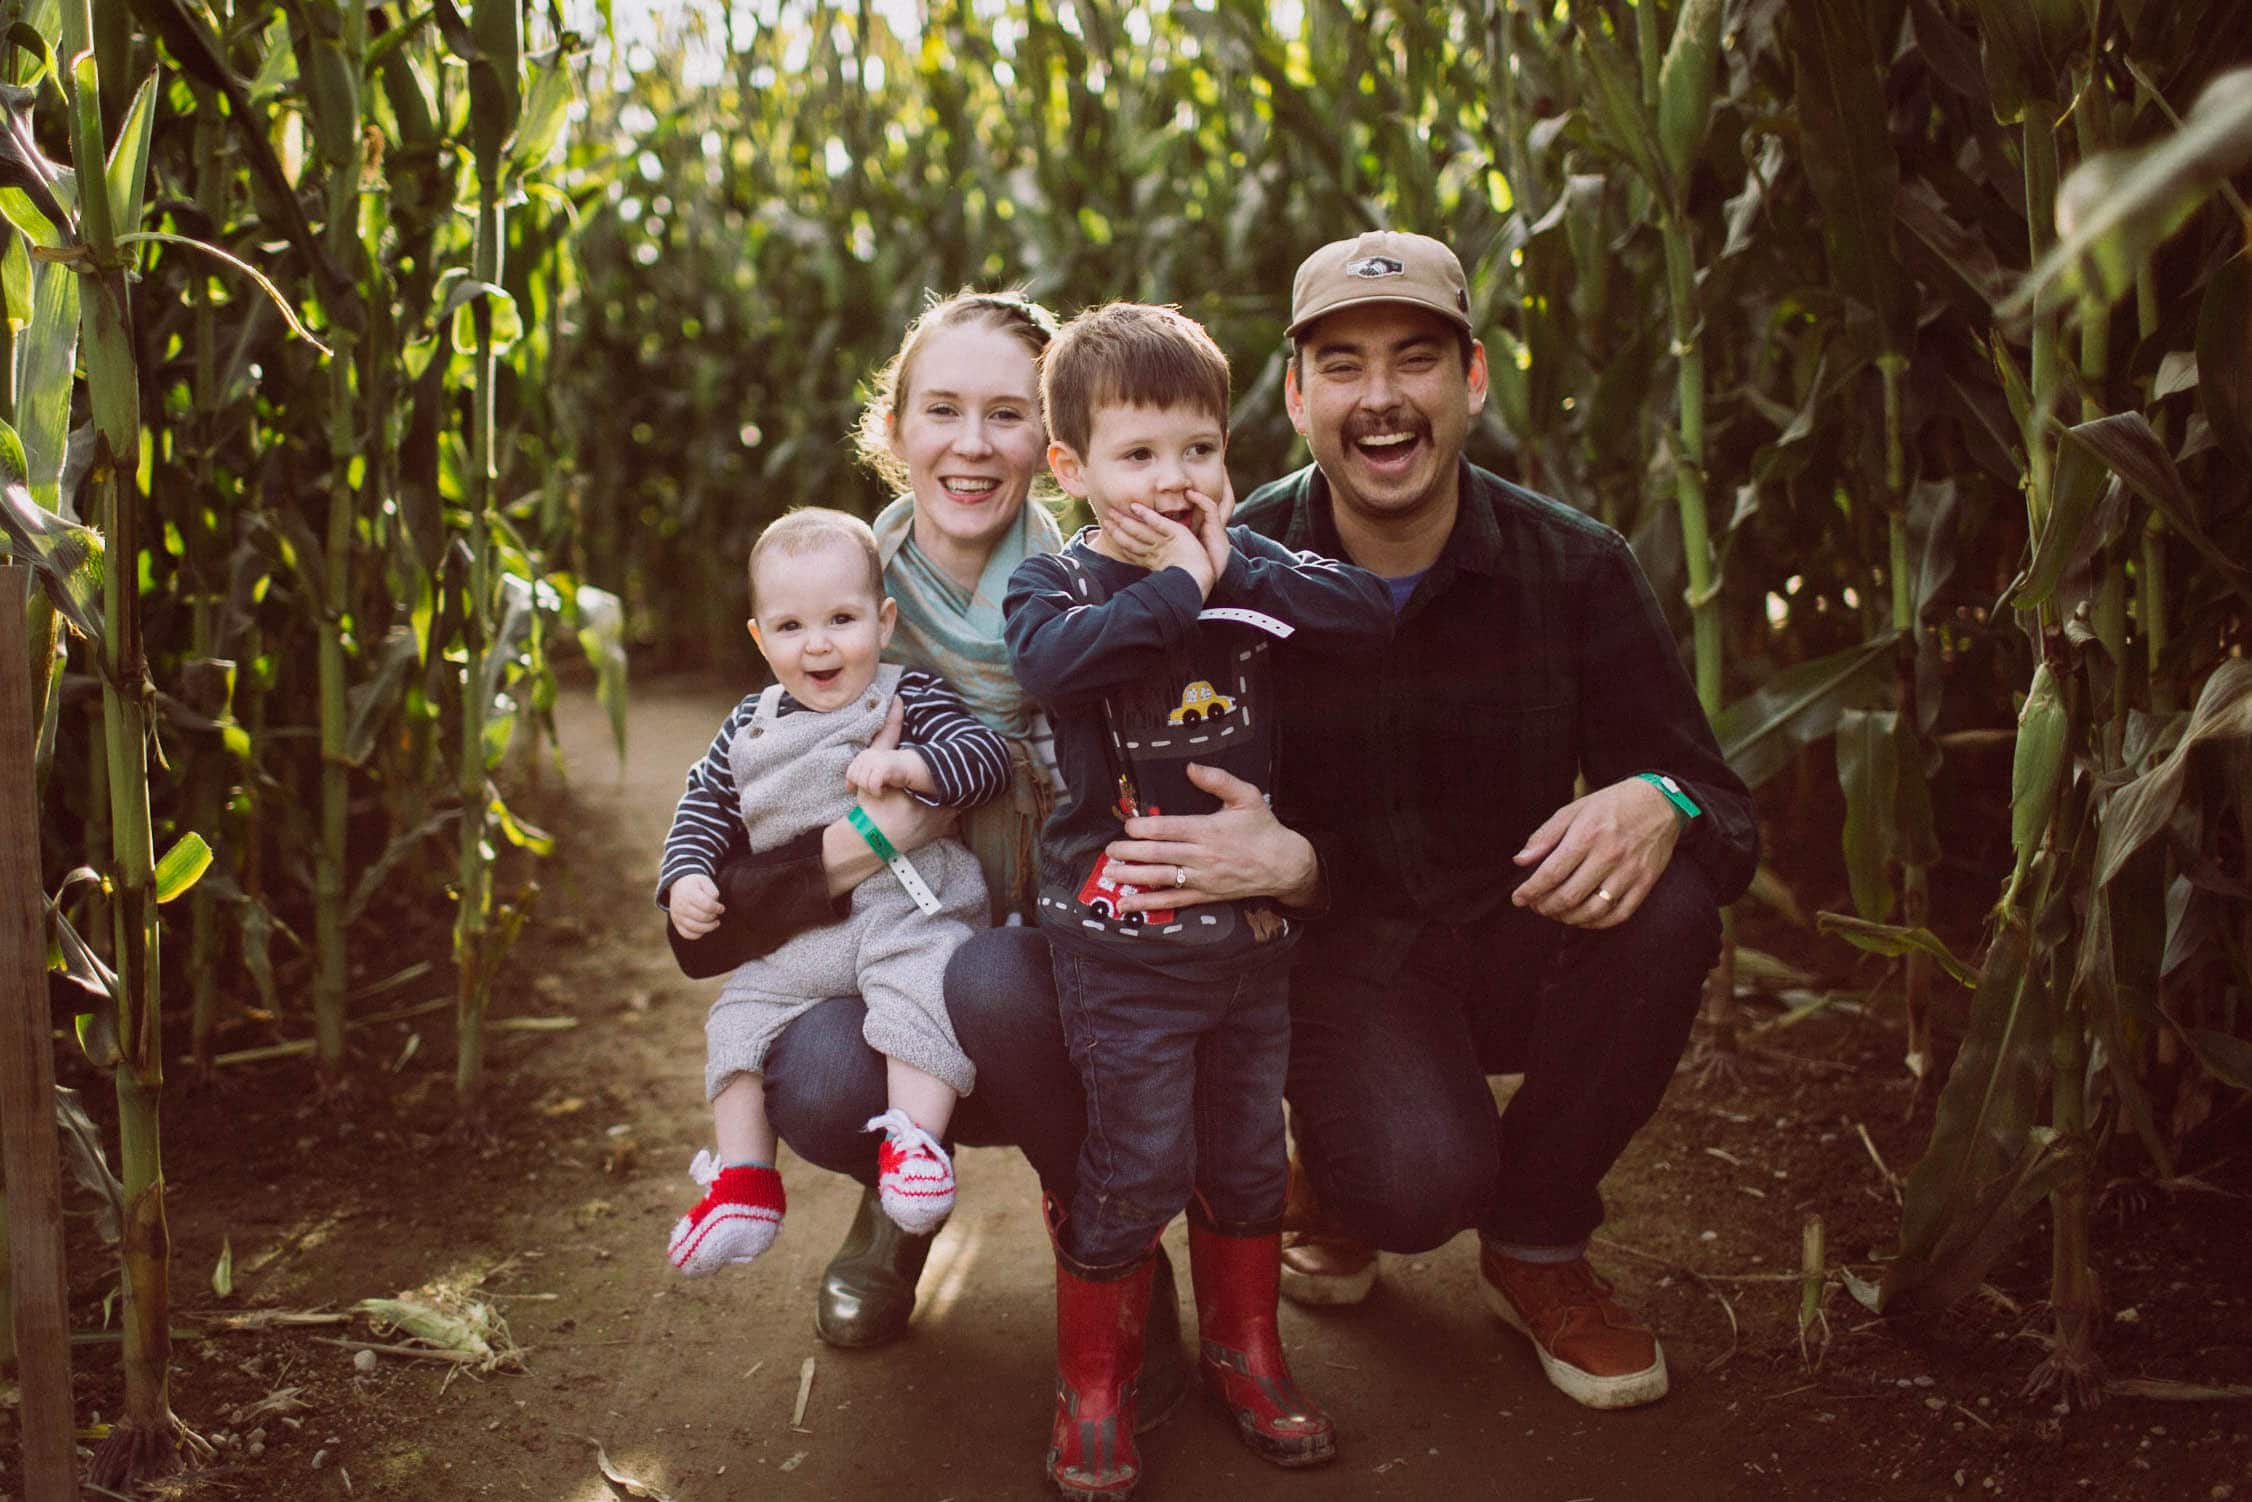 Bob’s Corn Family Photo Shoot